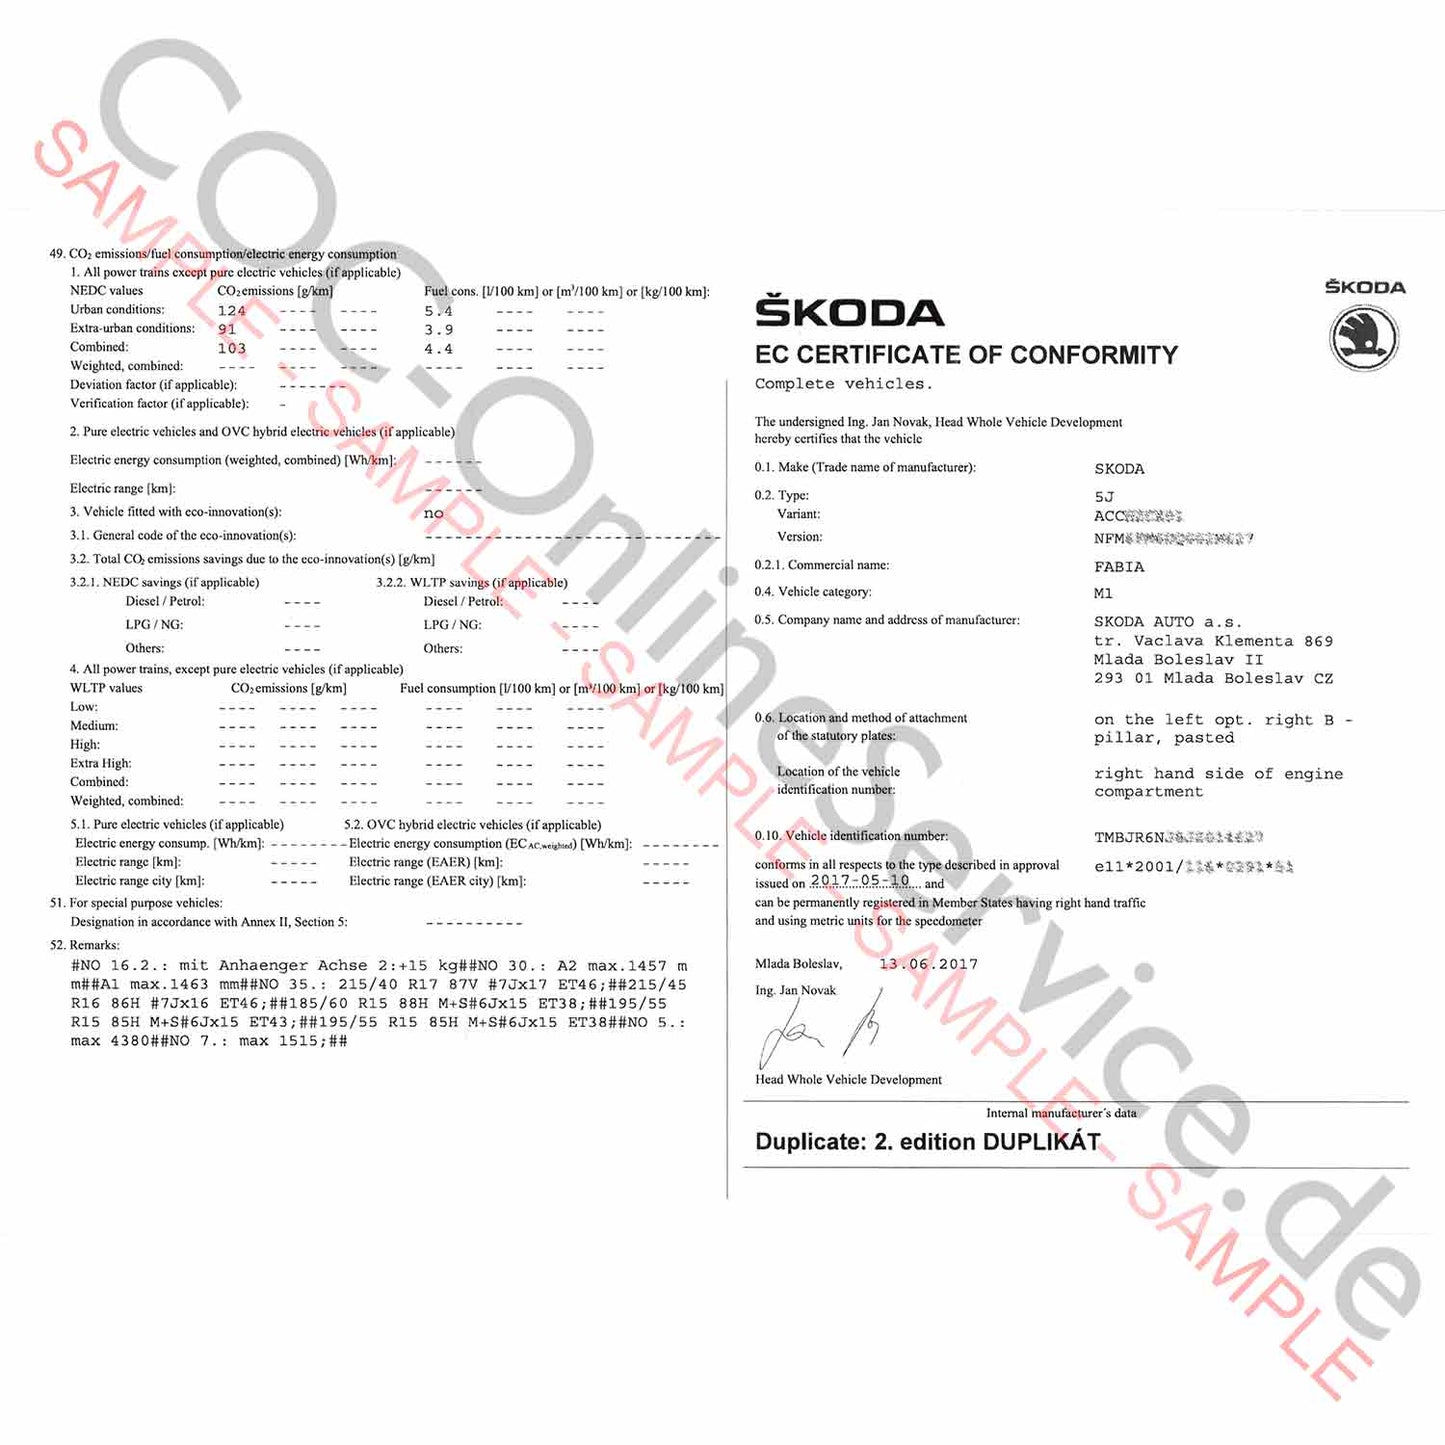 COC-papieren voor Skoda (certificaat van overeenstemming)